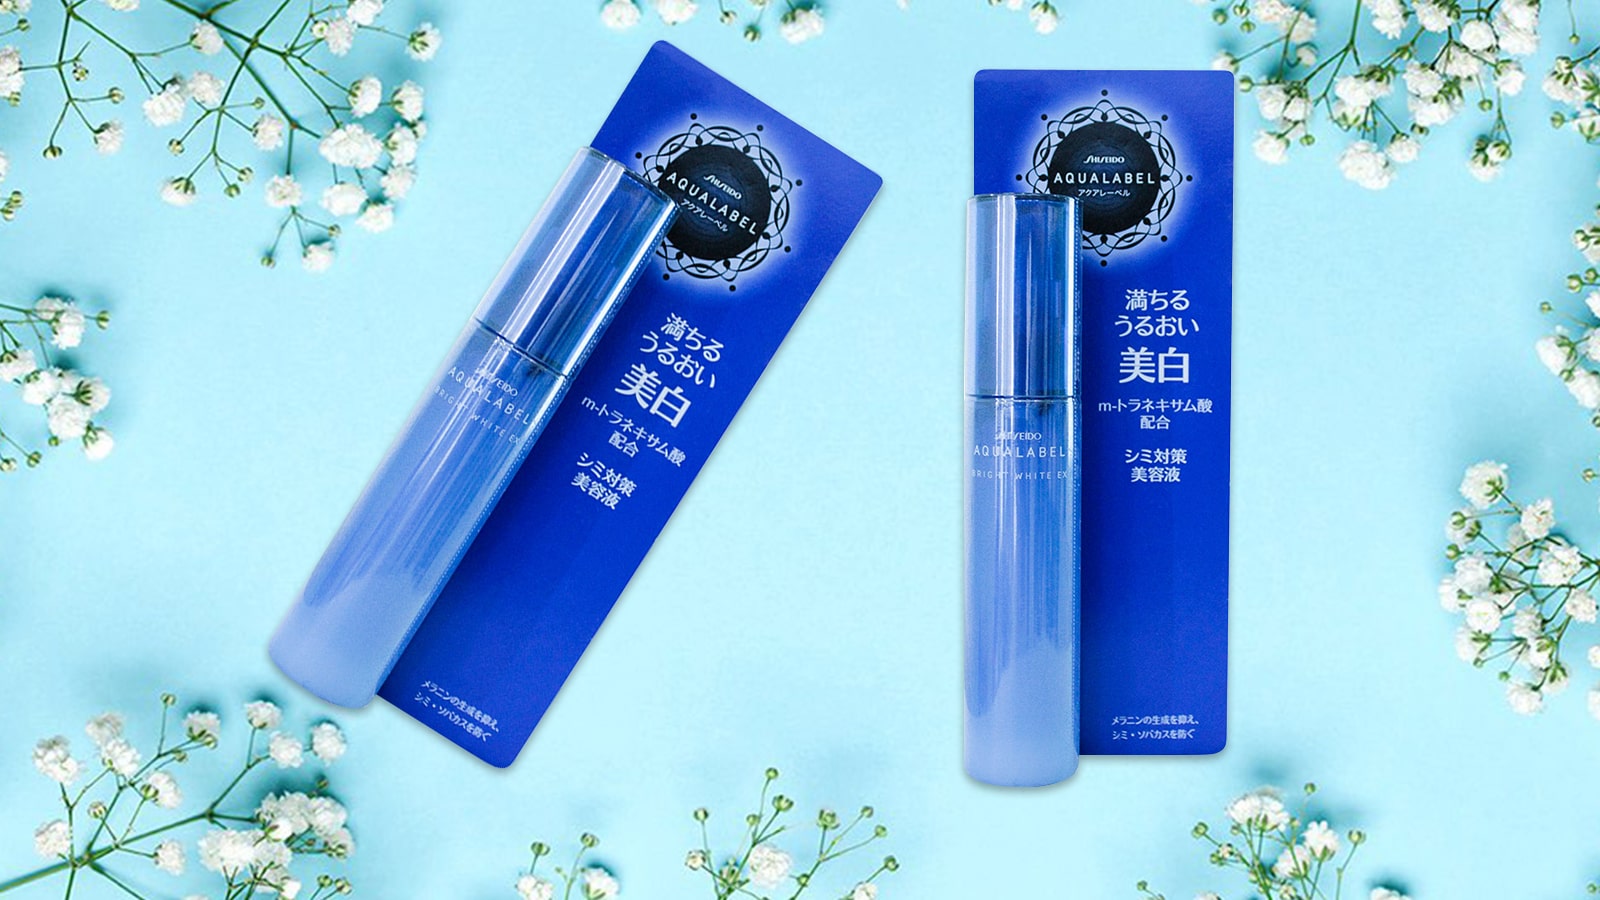 Káº¿t quáº£ hÃ¬nh áº£nh cho Tinh cháº¥t Shiseido Aqualabel Bright White EX